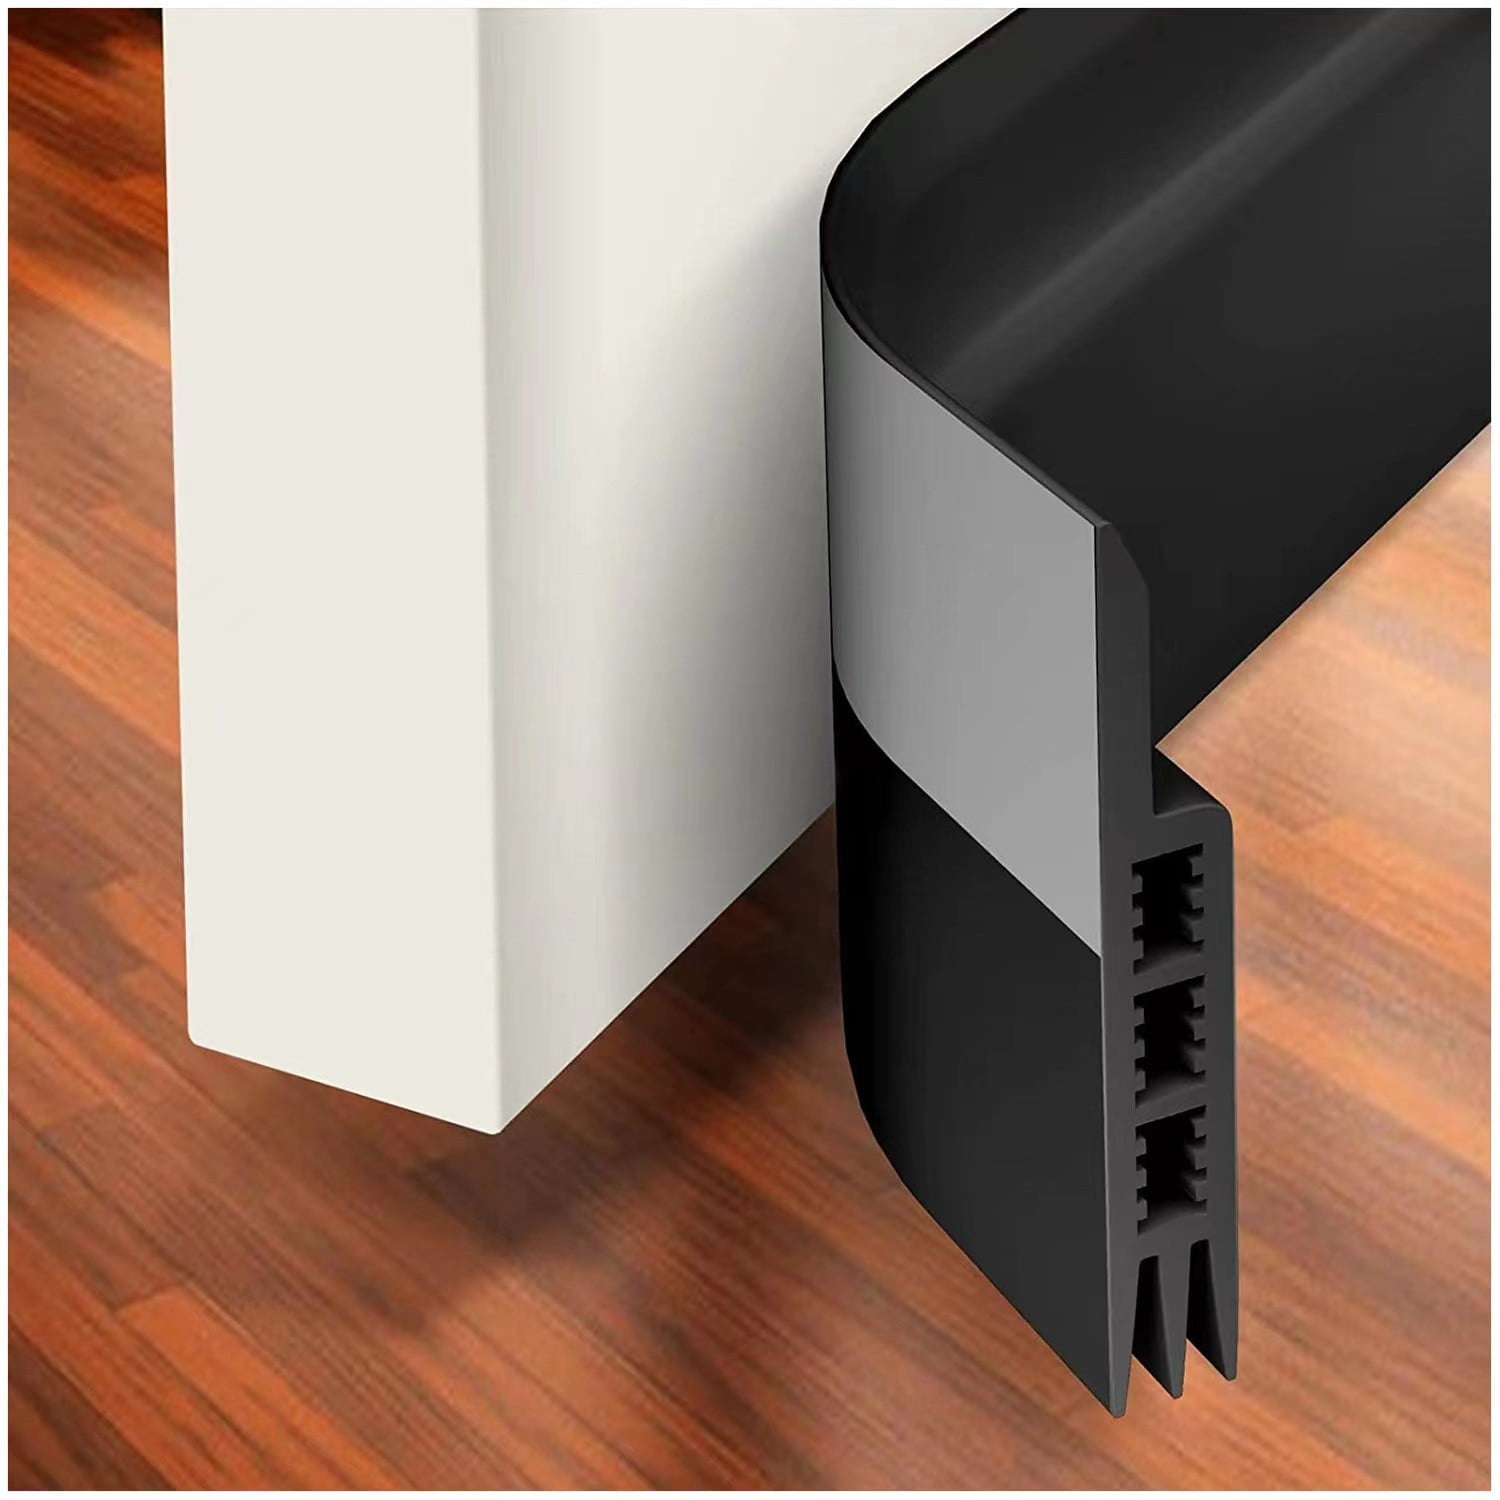 RBCKVXZ Door Draft Stopper Under Door Draft Blocker Insulator Door Sweep Weather  Stripping Noise Stopper Strong Adhesive Door Stops of Rubber Home Room Decor  on Clearance 